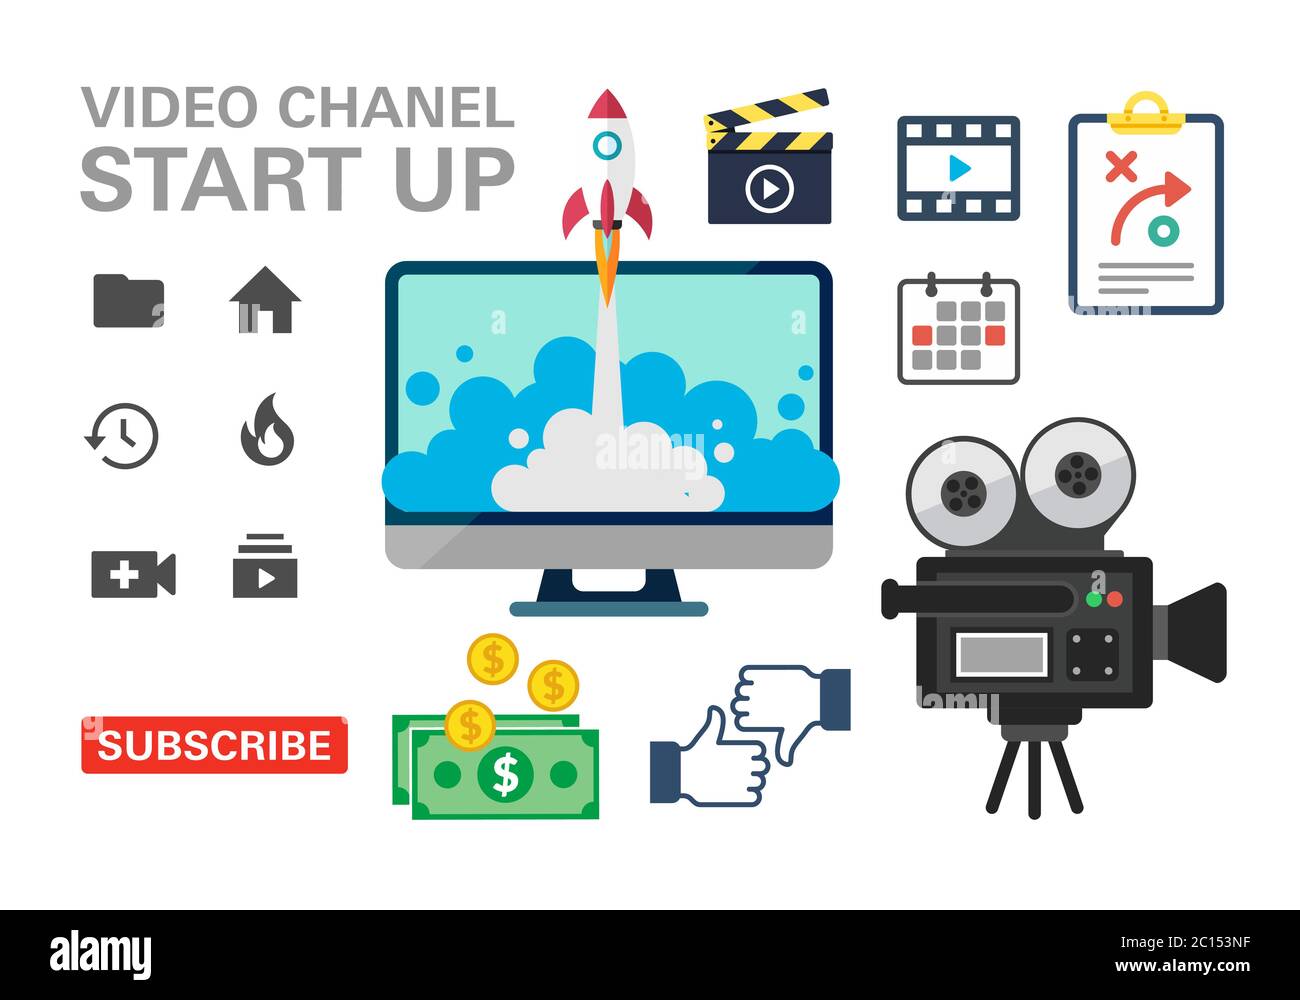 Eine Sammlung von Symbolen aus Werbeaktionen für Videokanäle. Geeignet für Design-Elemente der viralen Kanal Start-up-Werbung, Content-Schöpfer, Videografie Stock Vektor